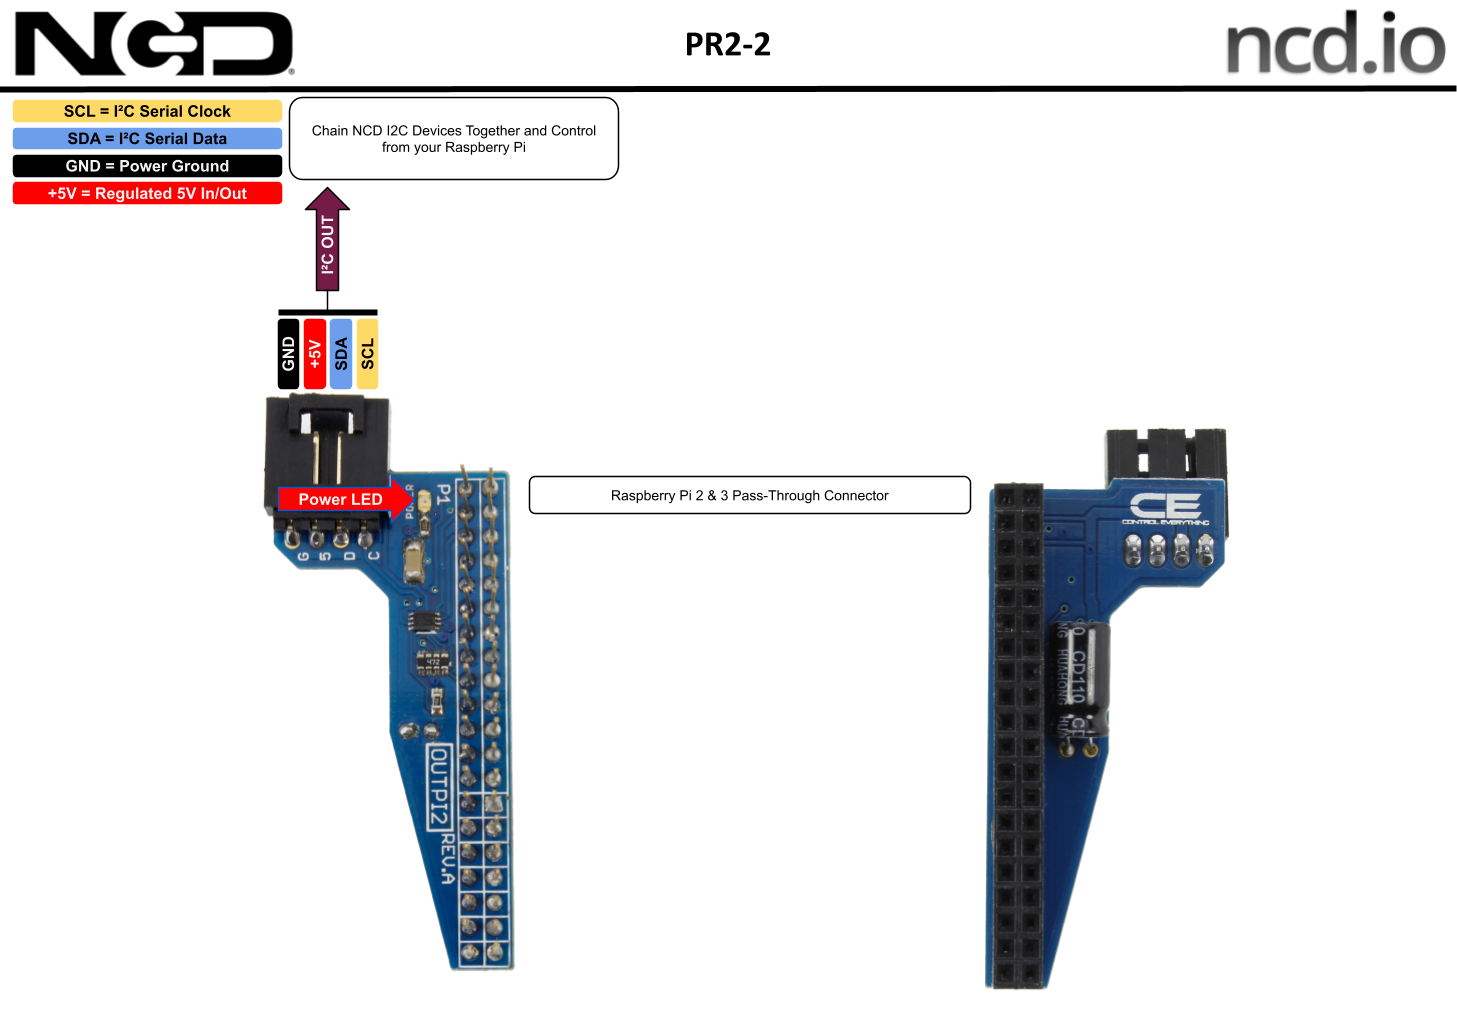 I2c Shield For Raspberry Pi 4 Pi 3 And Pi 2 With Outward Facing I2c Port 3688